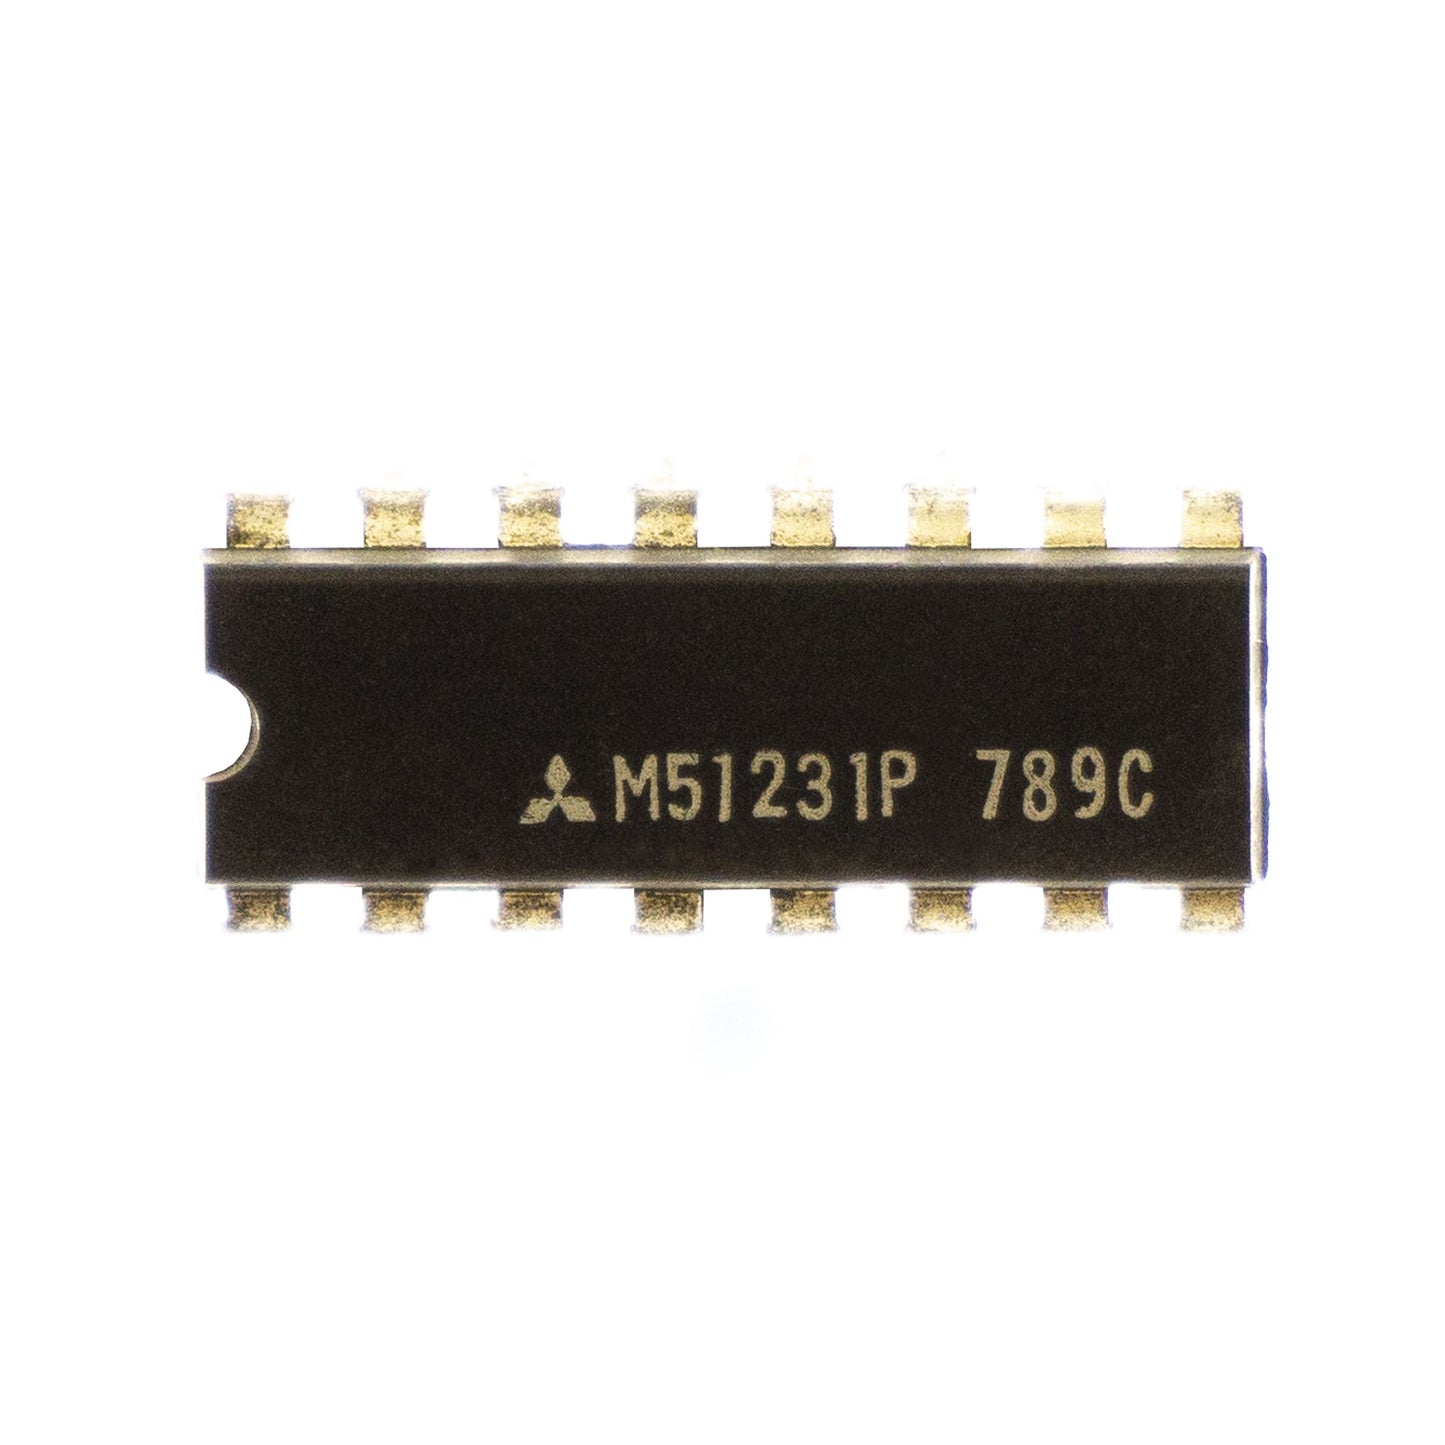 Mitsubishi M51231P circuito integrato, transistor, componente elettronico, 16 contatti